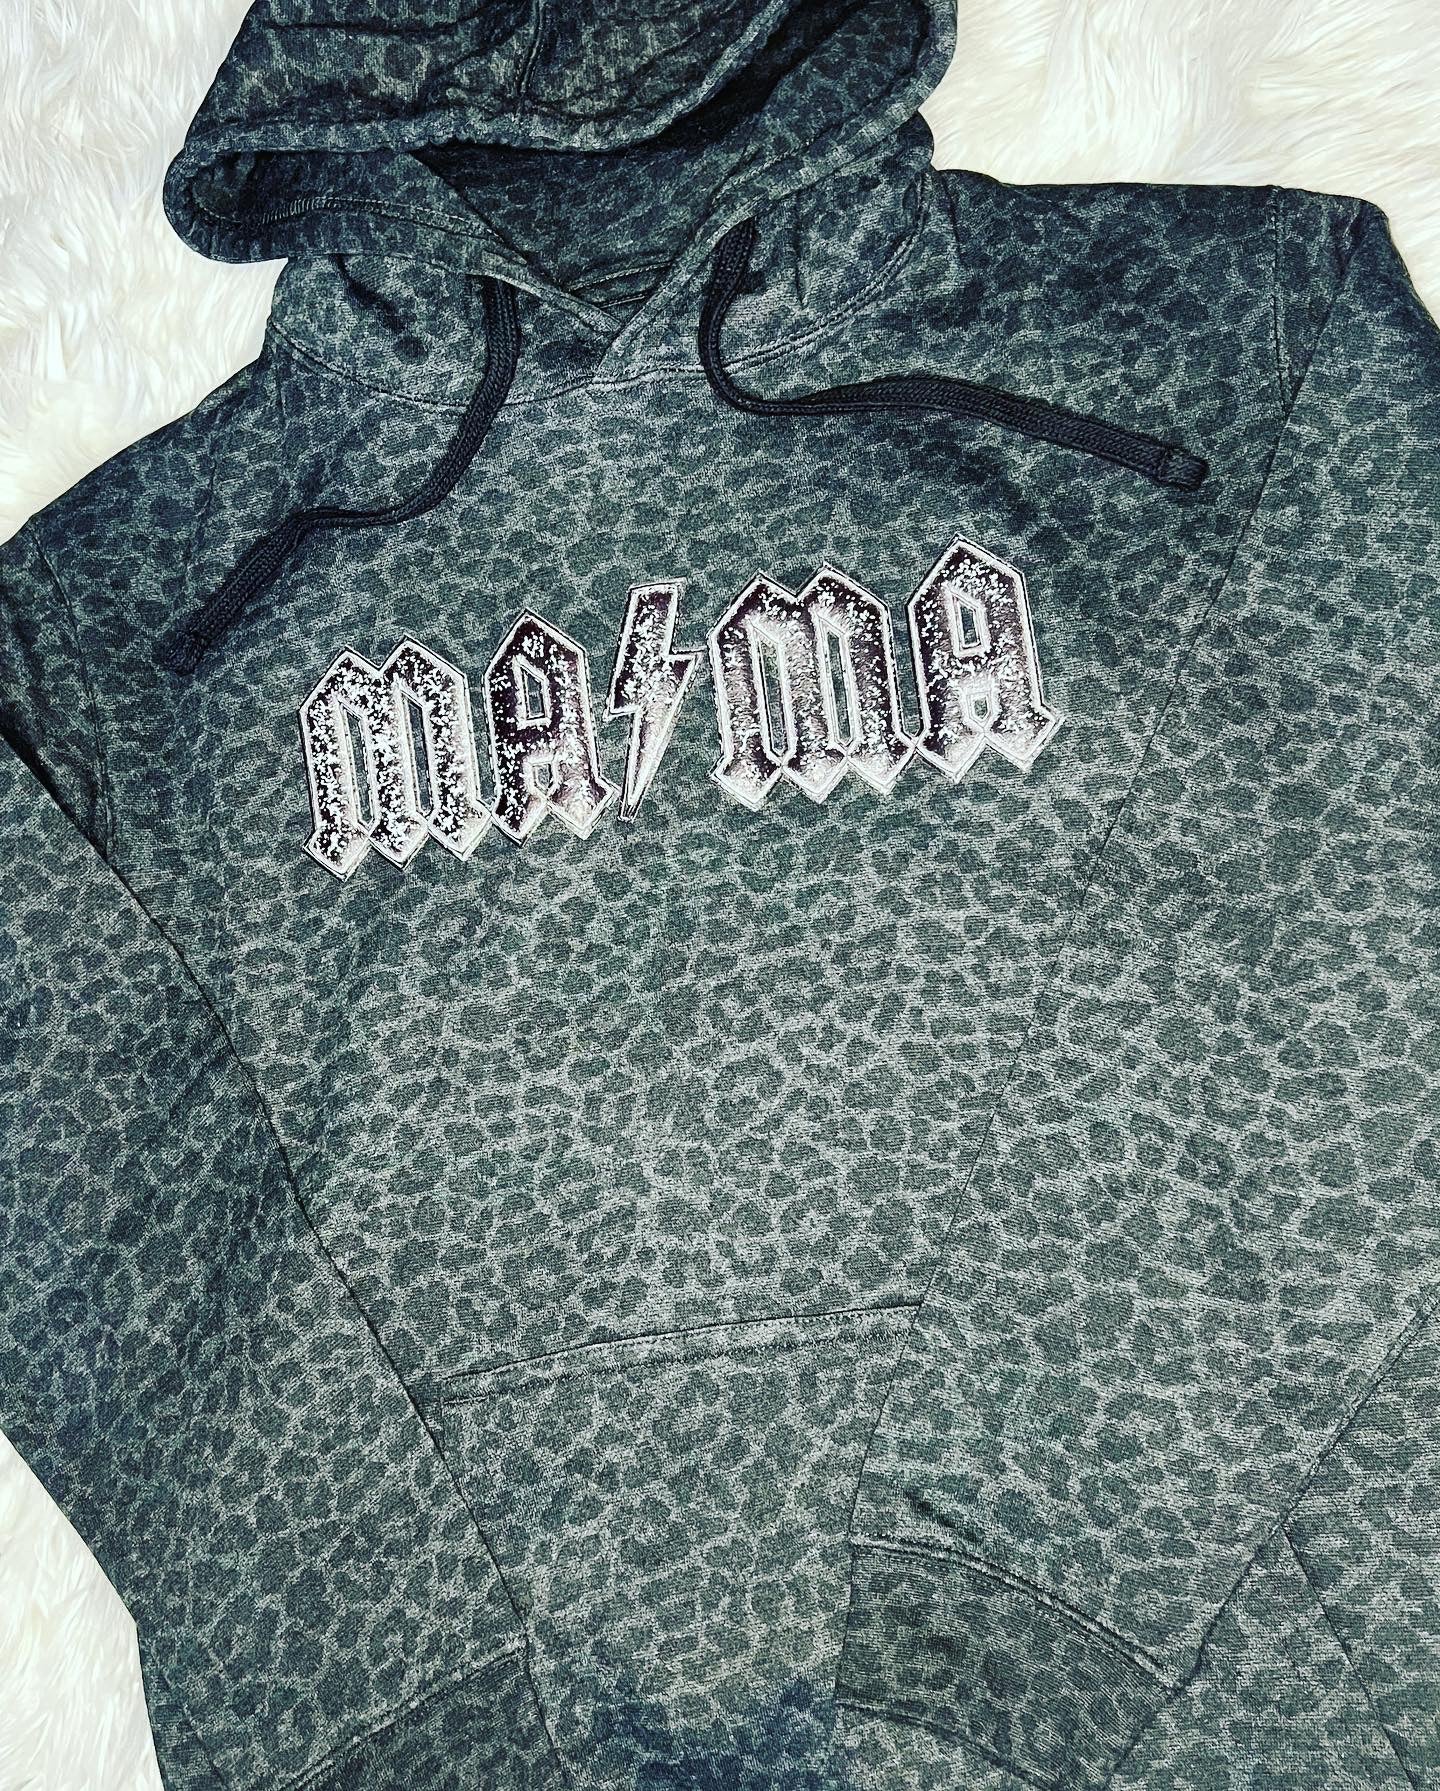 Mama Cheetah hooded sweatshirt